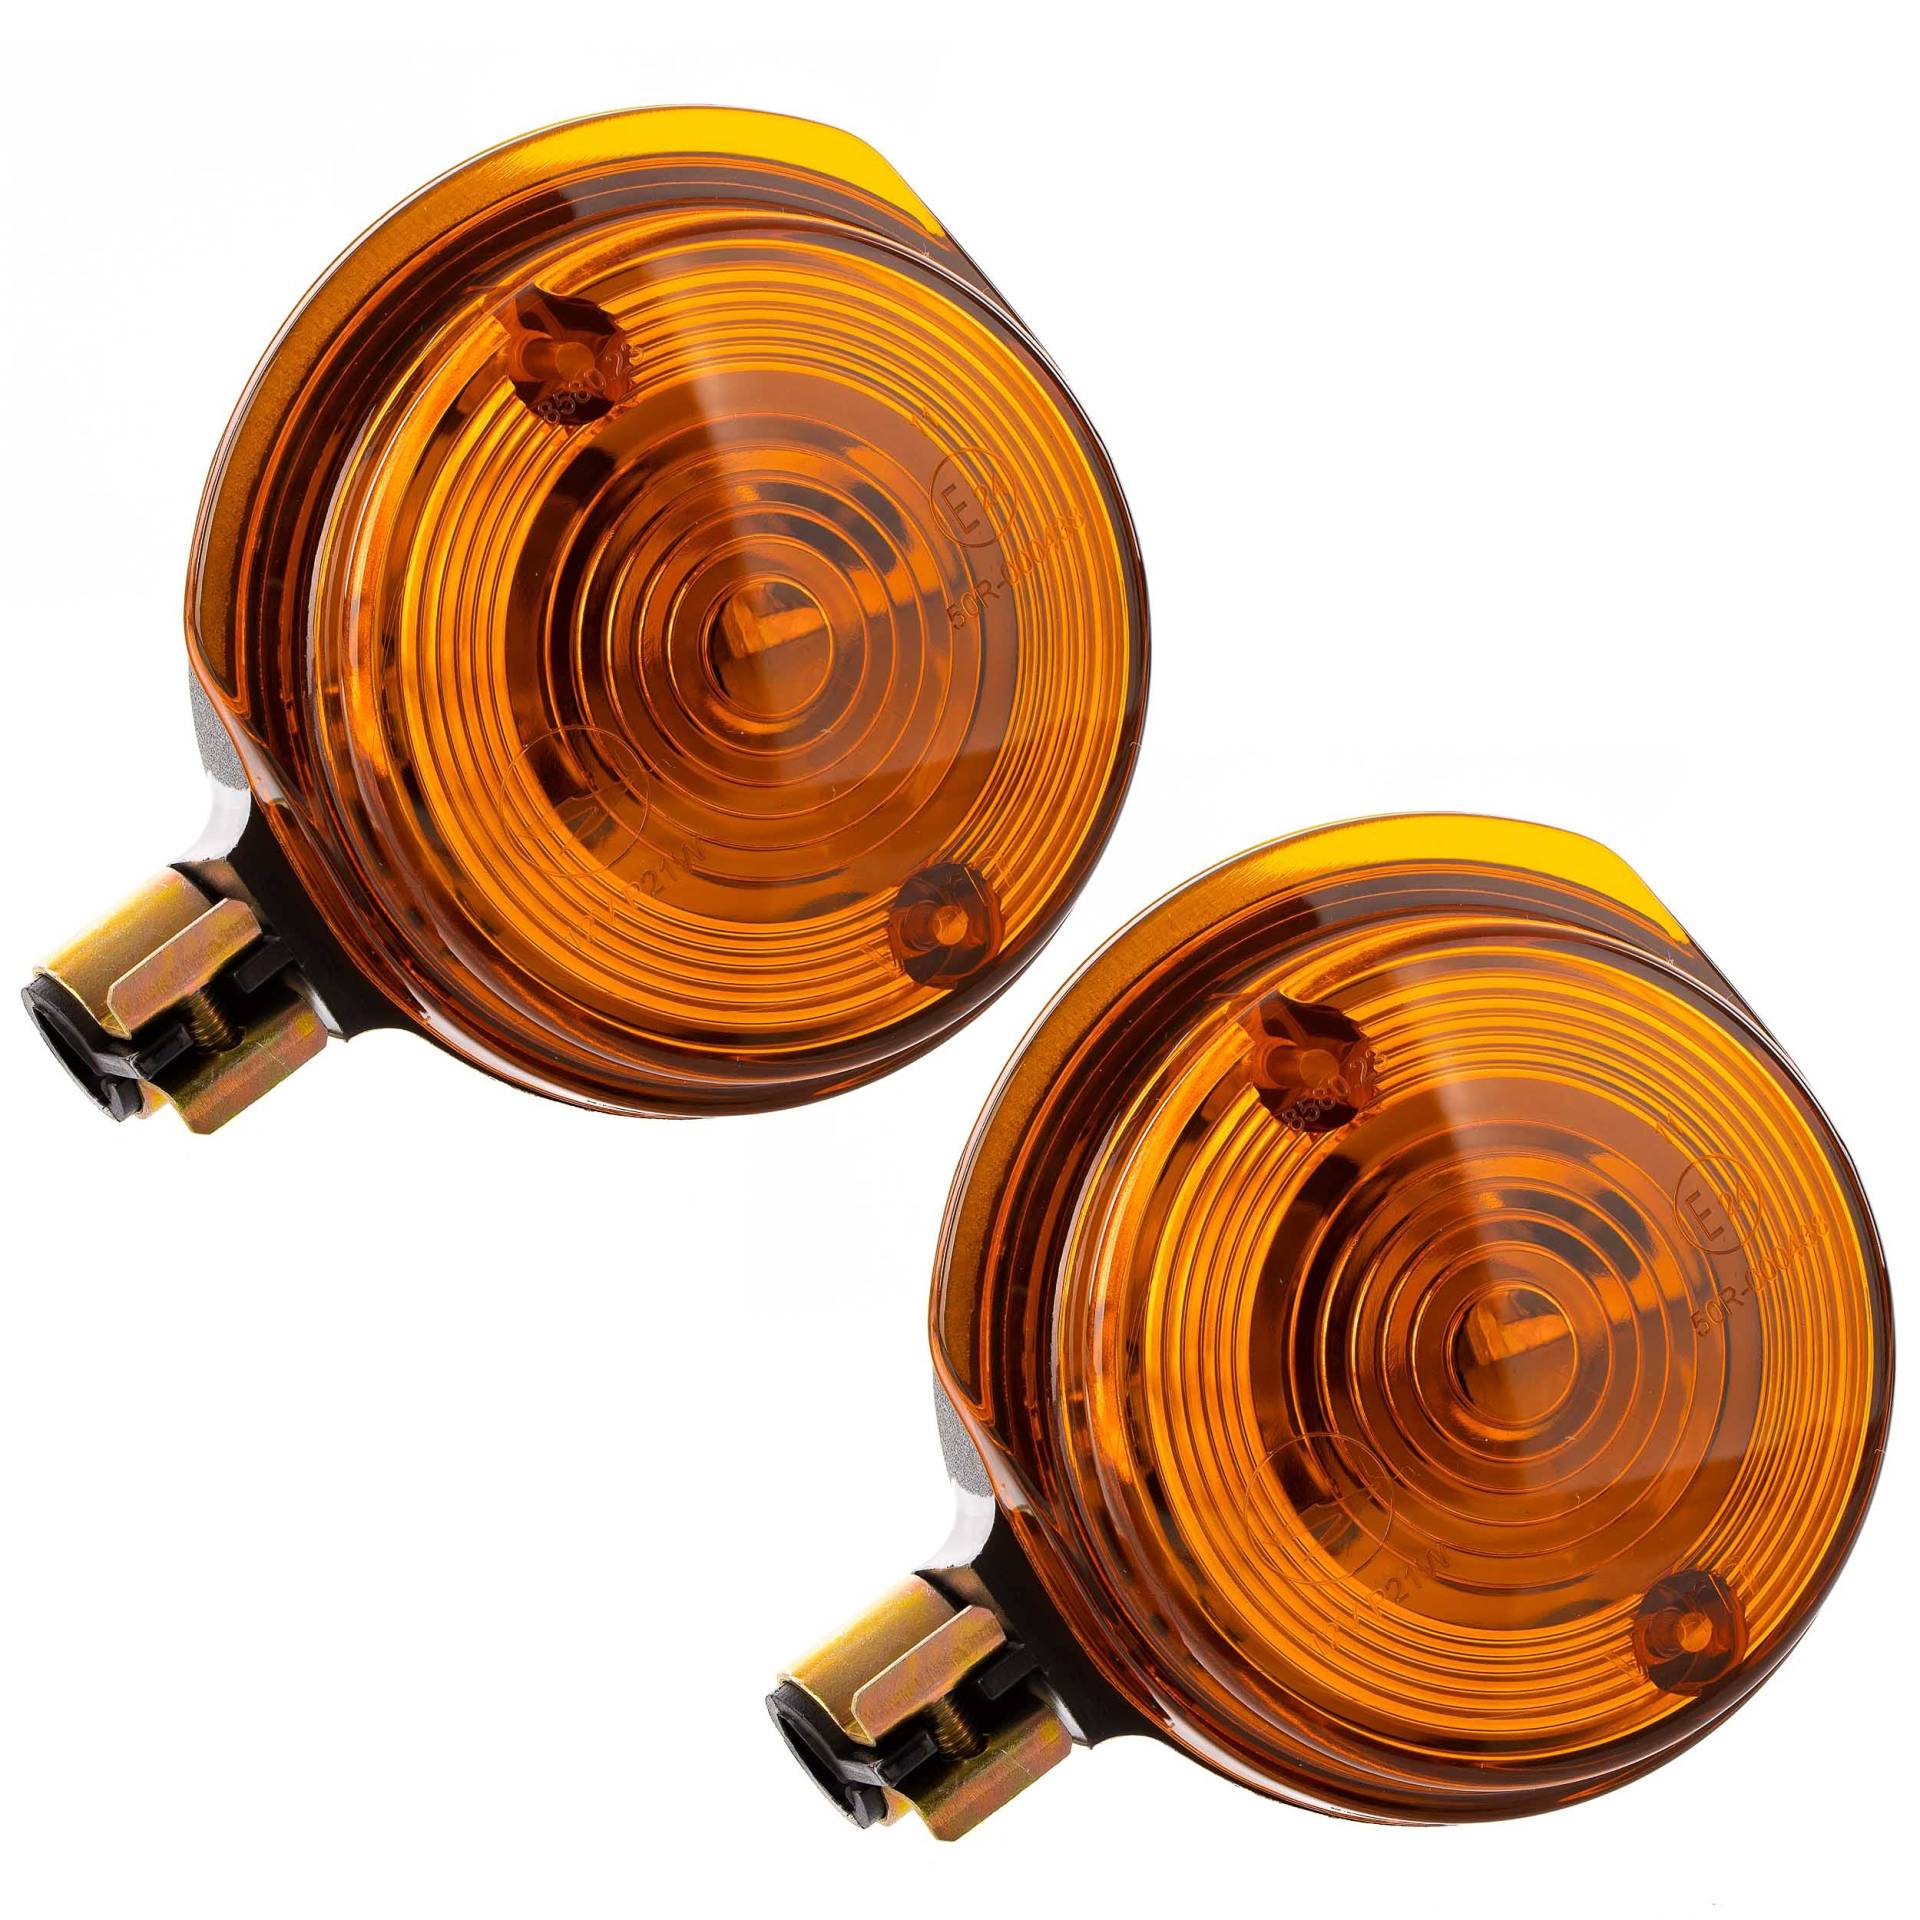 Paar Blinkleuchten, vordere - rund - 8580.23 - Lichtaustritt: Orange - Blinkeraufnahme 10 mm von Unbekannt